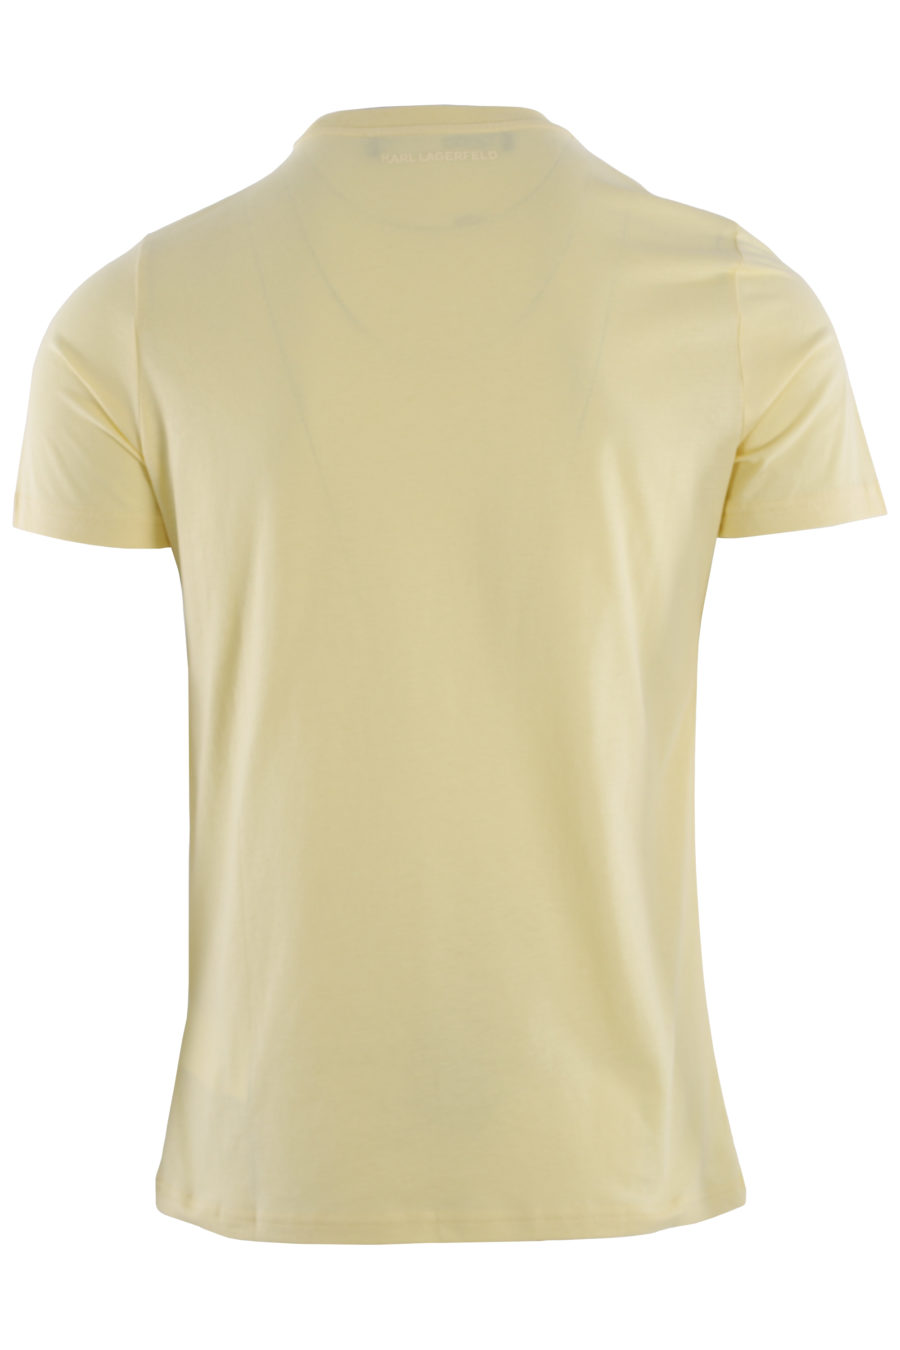 Camiseta amarilla con logo estampado - IMG 0435